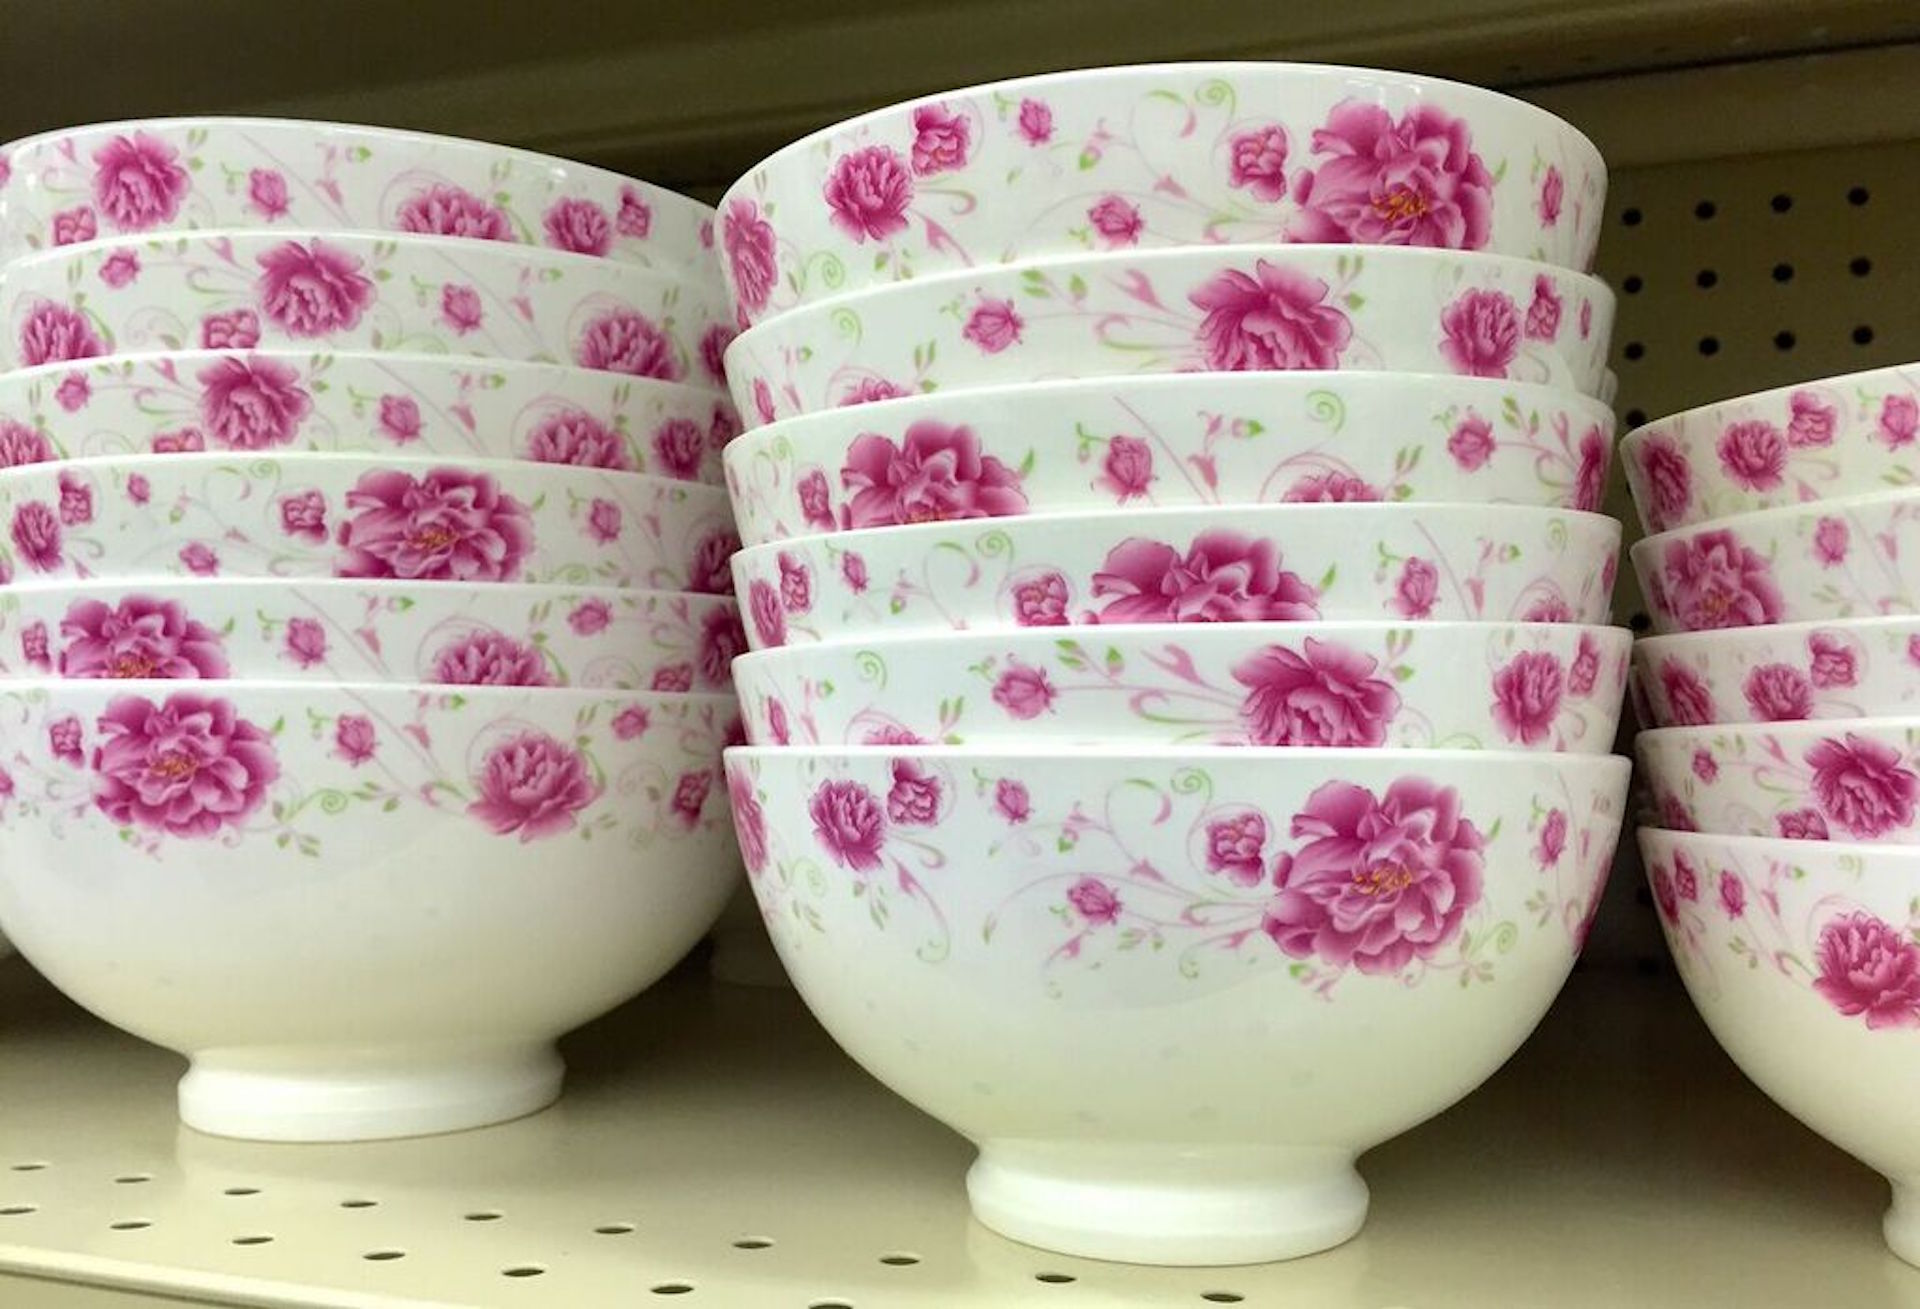 Pink floral bowls